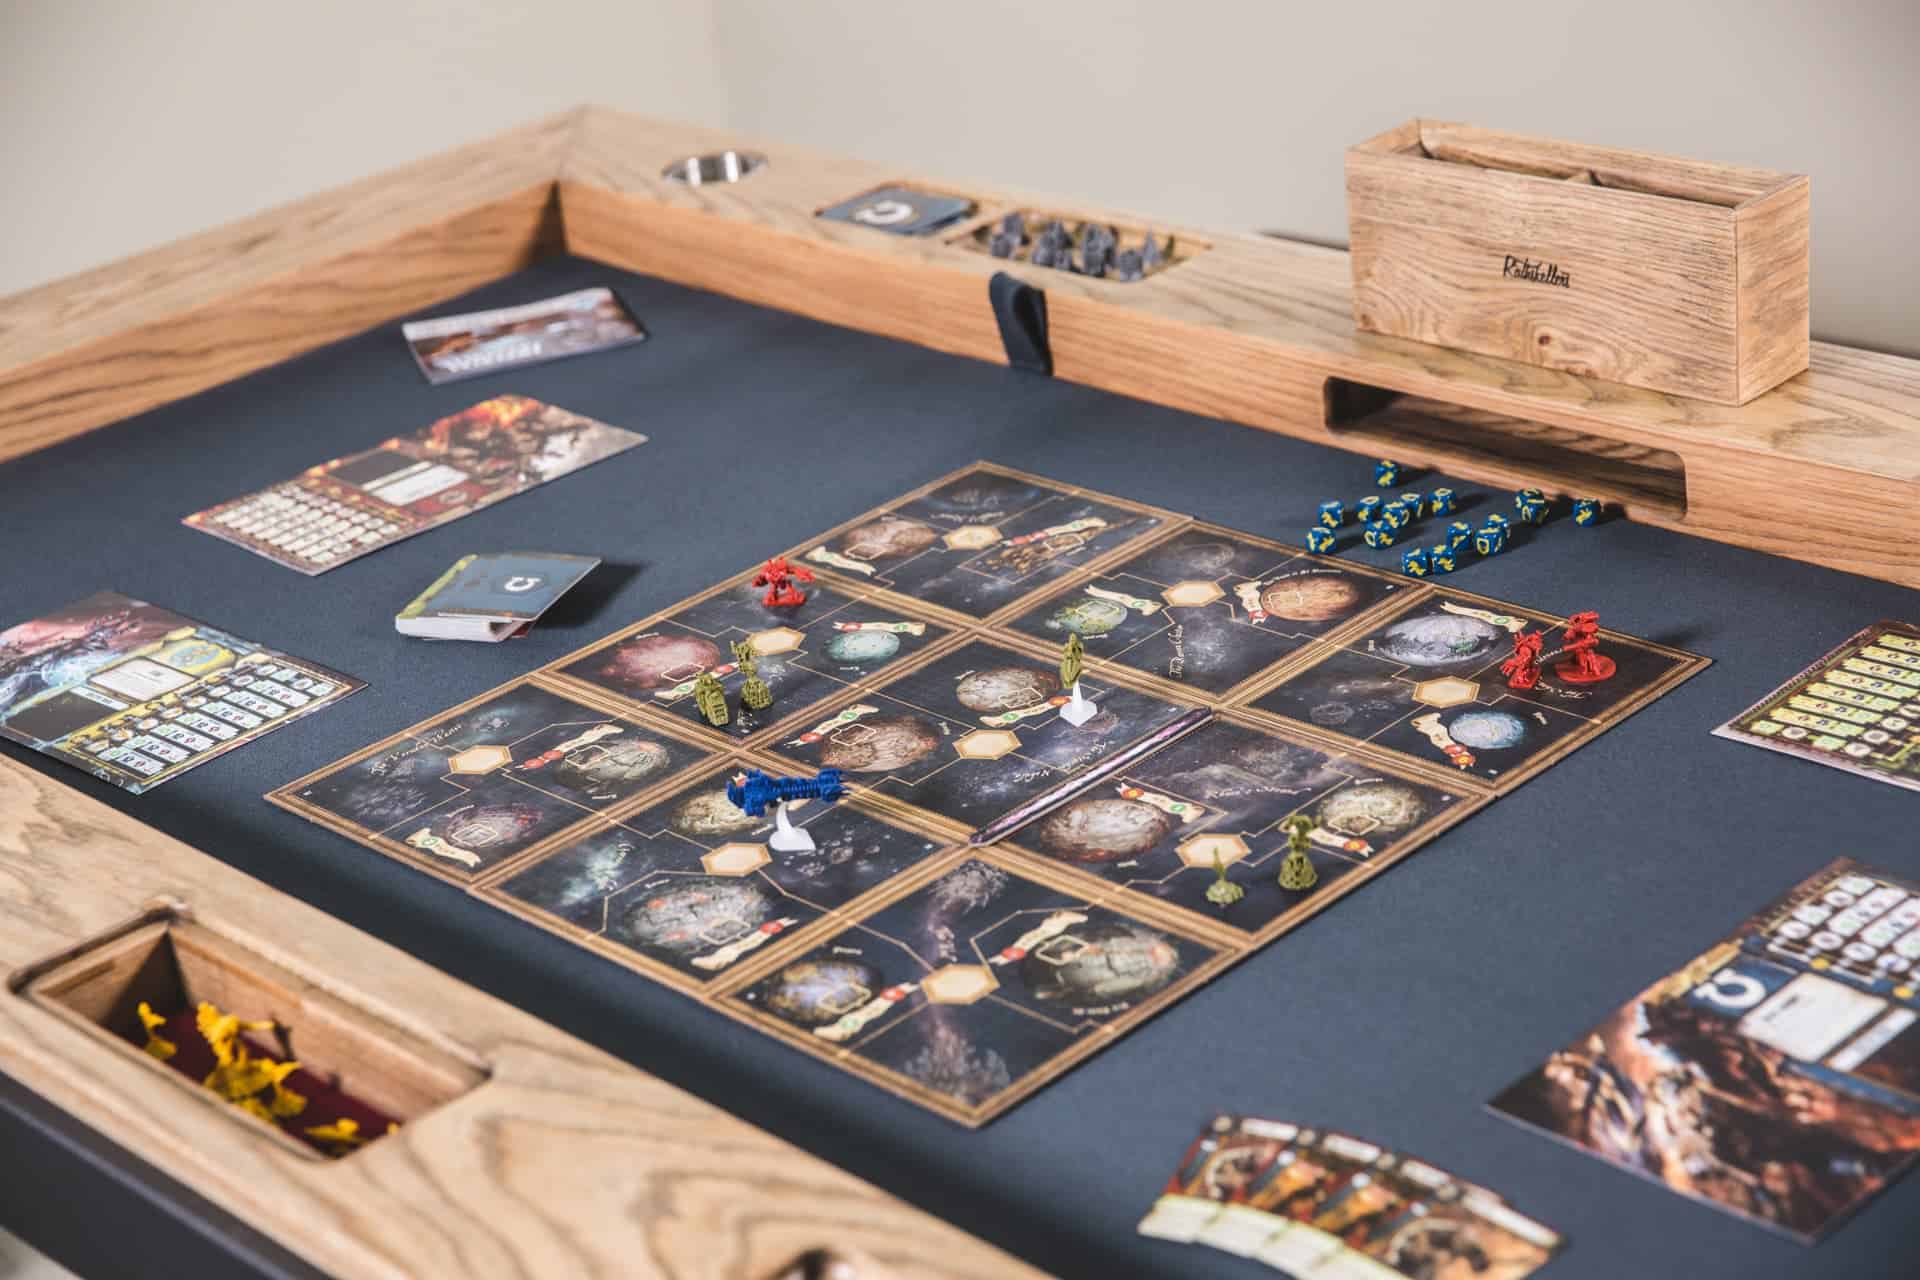 Mesa de RPG de vidro - uma ótima ideia  Entertainment room design, Table  games, Board game room